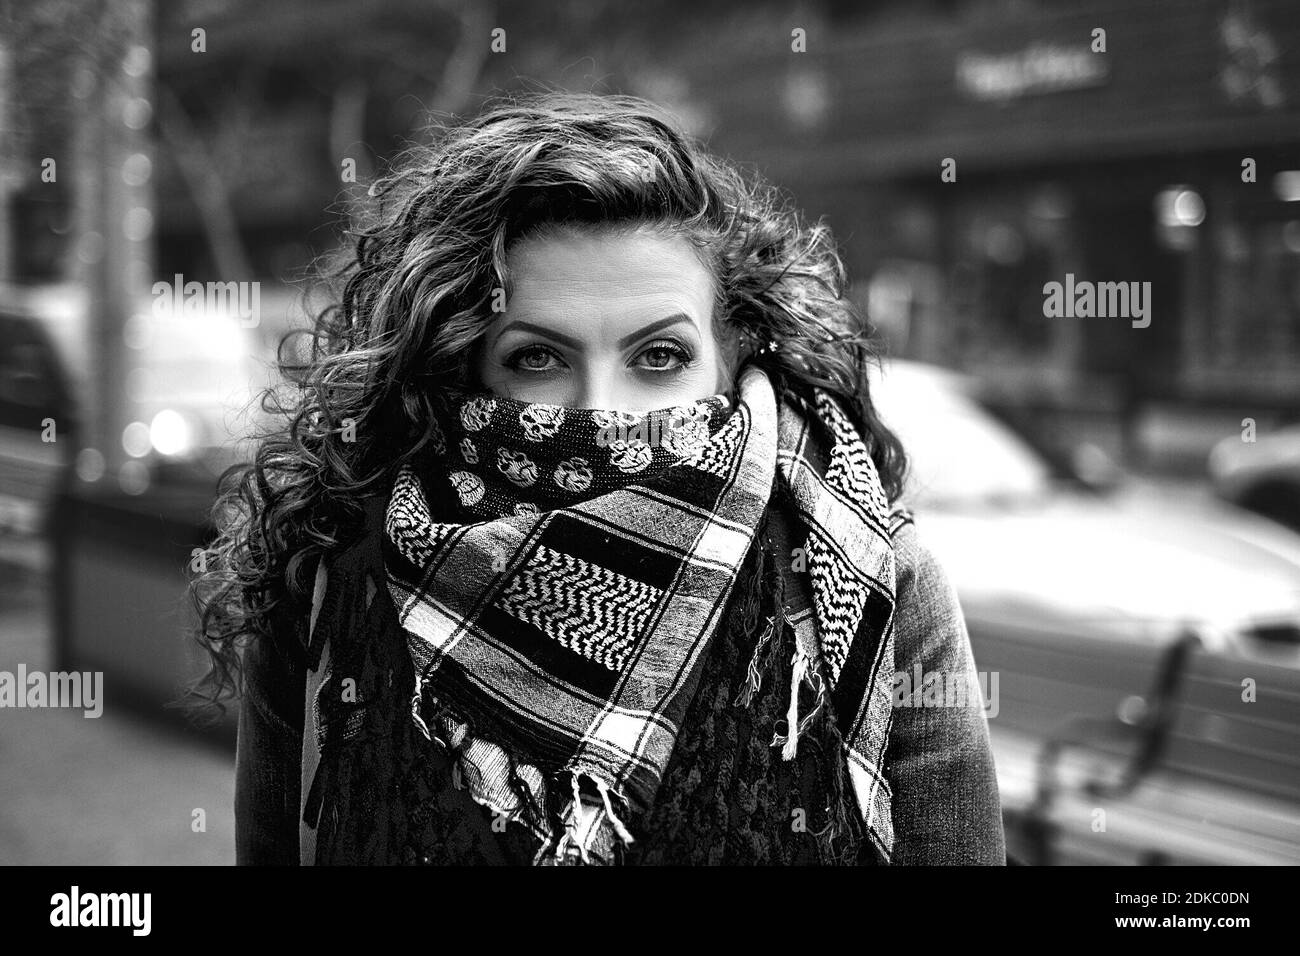 Young woman hiding face scarf Banque d'images noir et blanc - Alamy